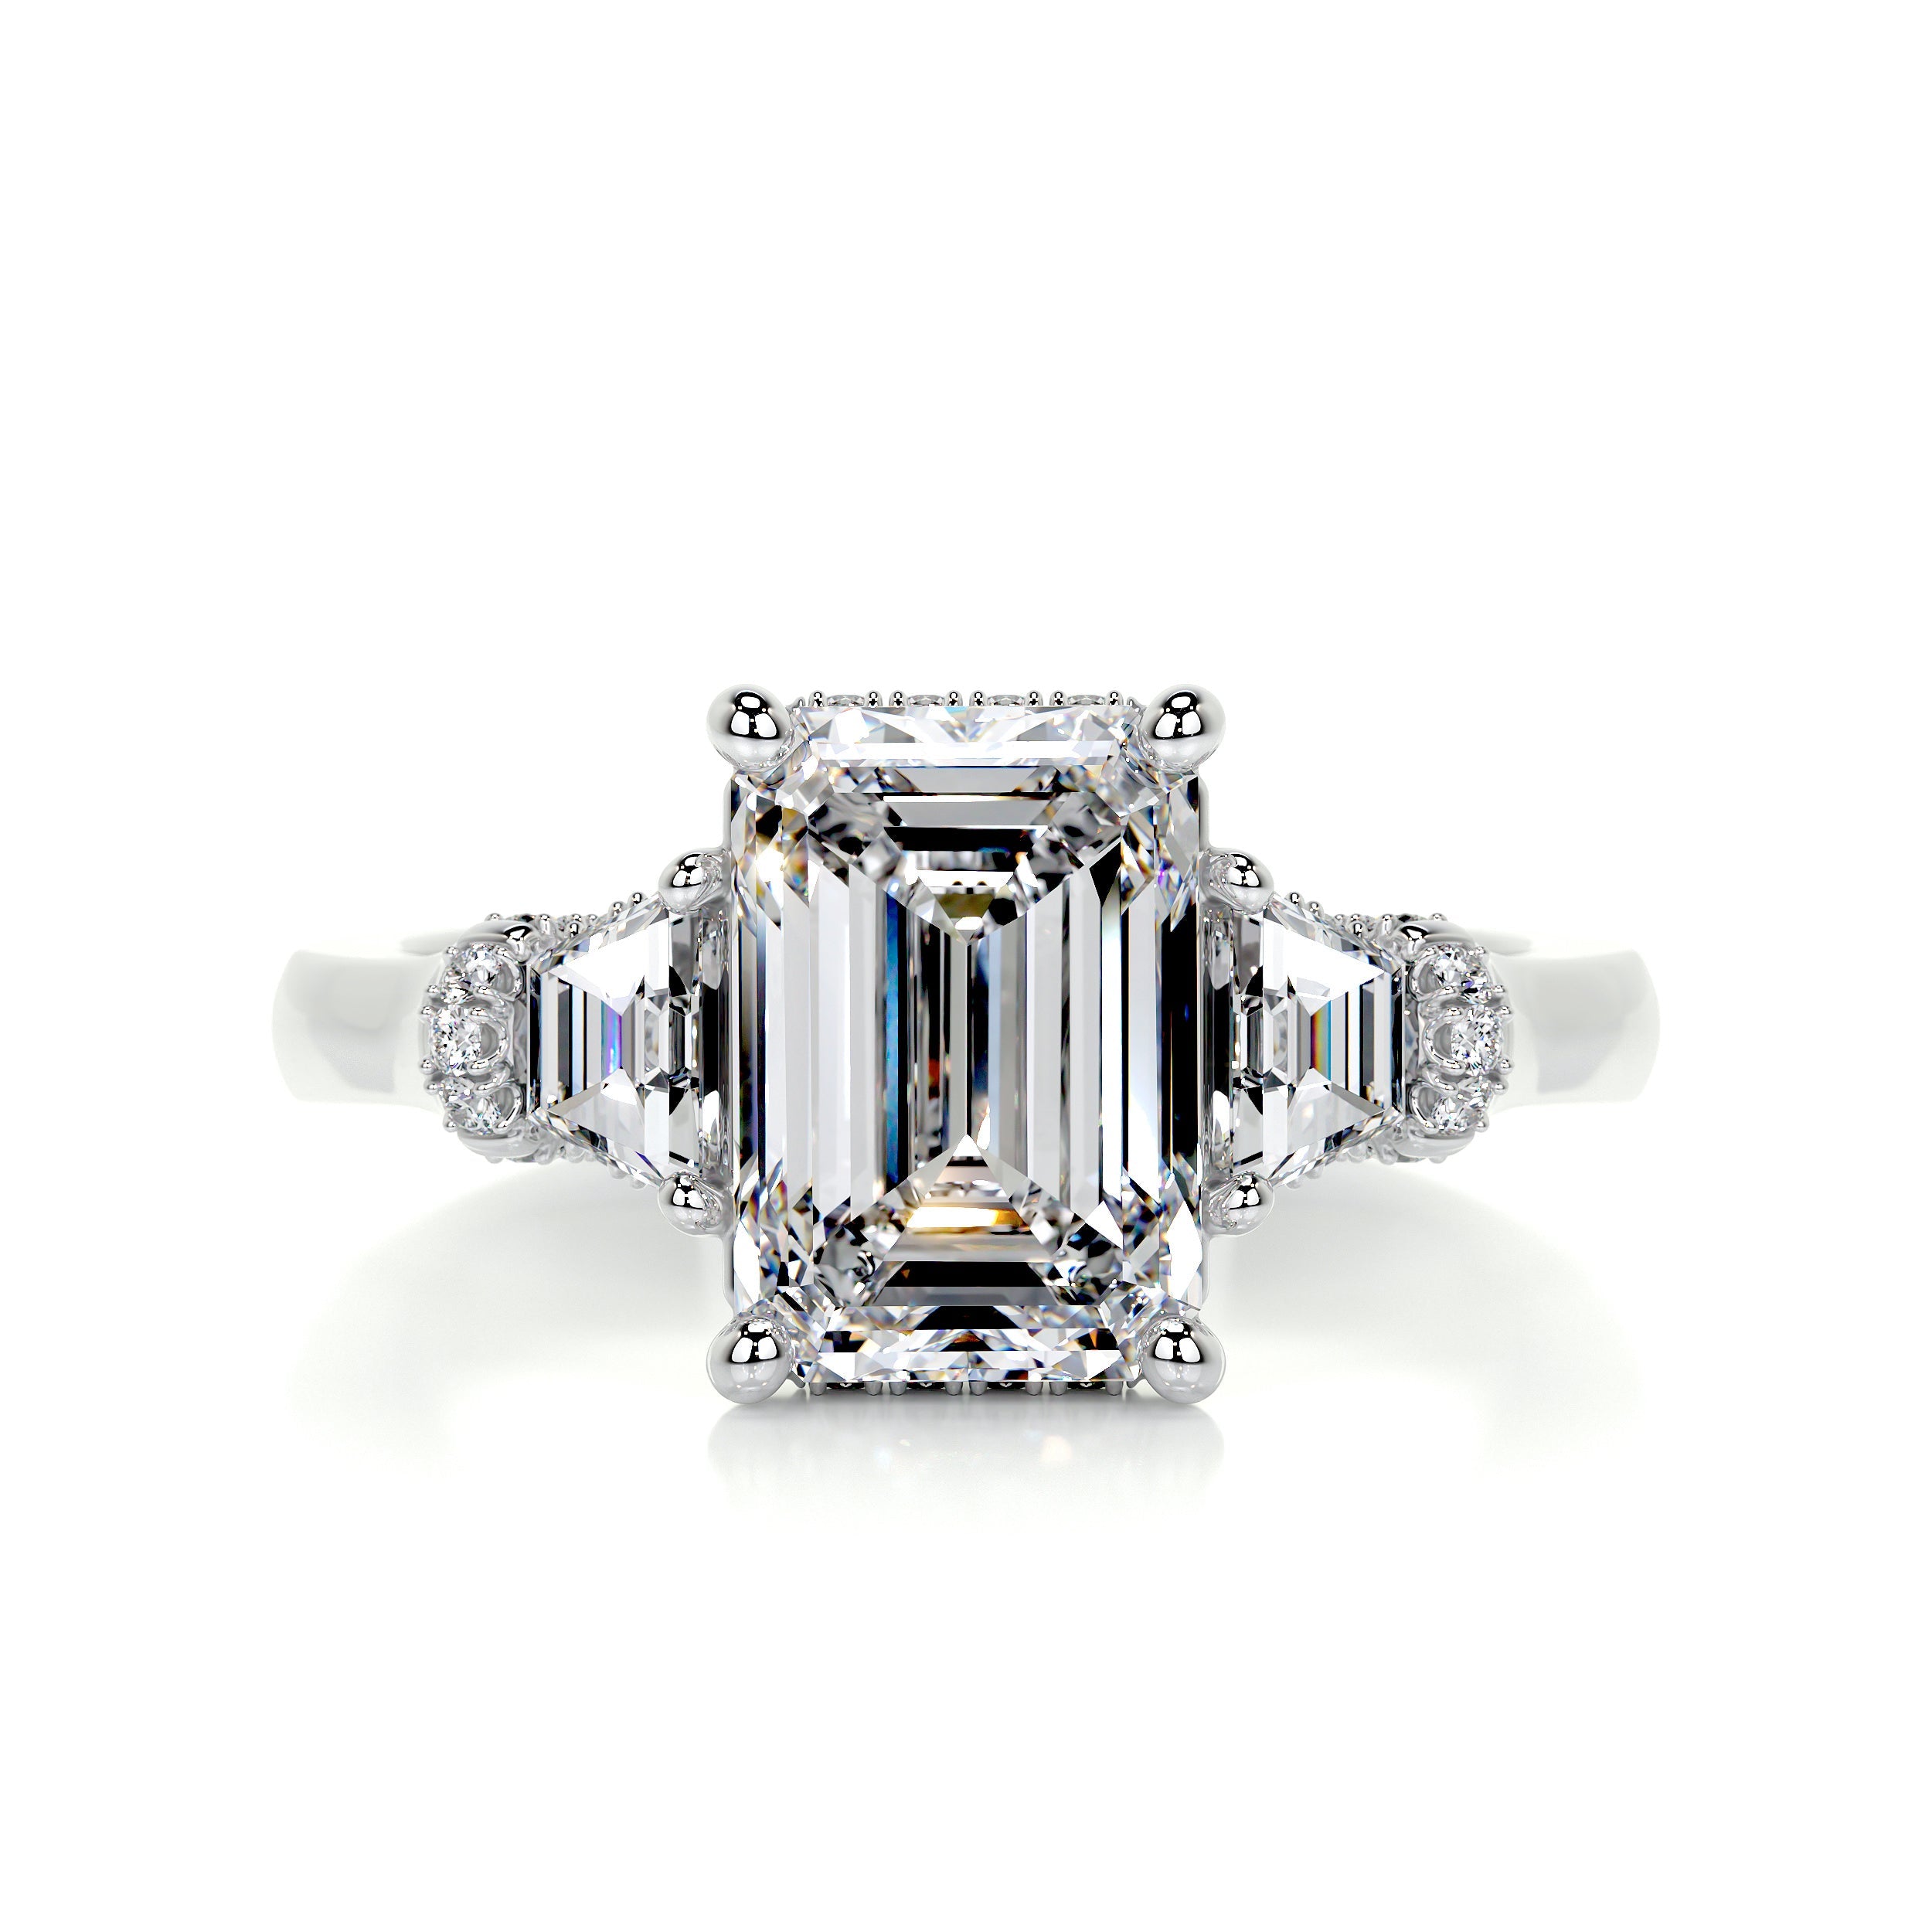 Viola Diamond Engagement Ring   (3.6 Carat) -14K White Gold